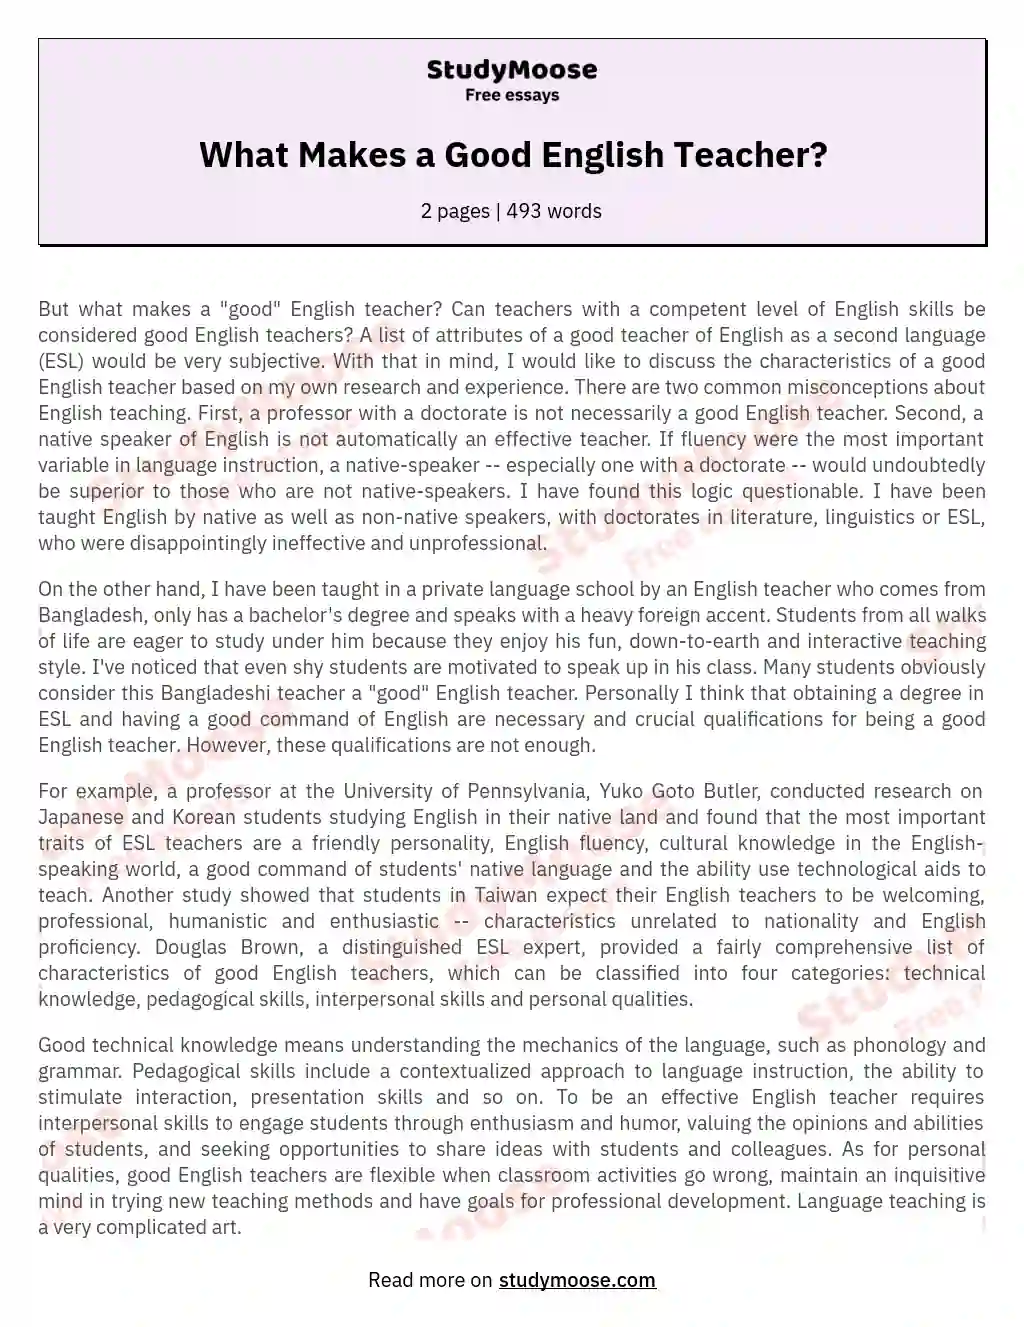 What Makes a Good English Teacher? essay